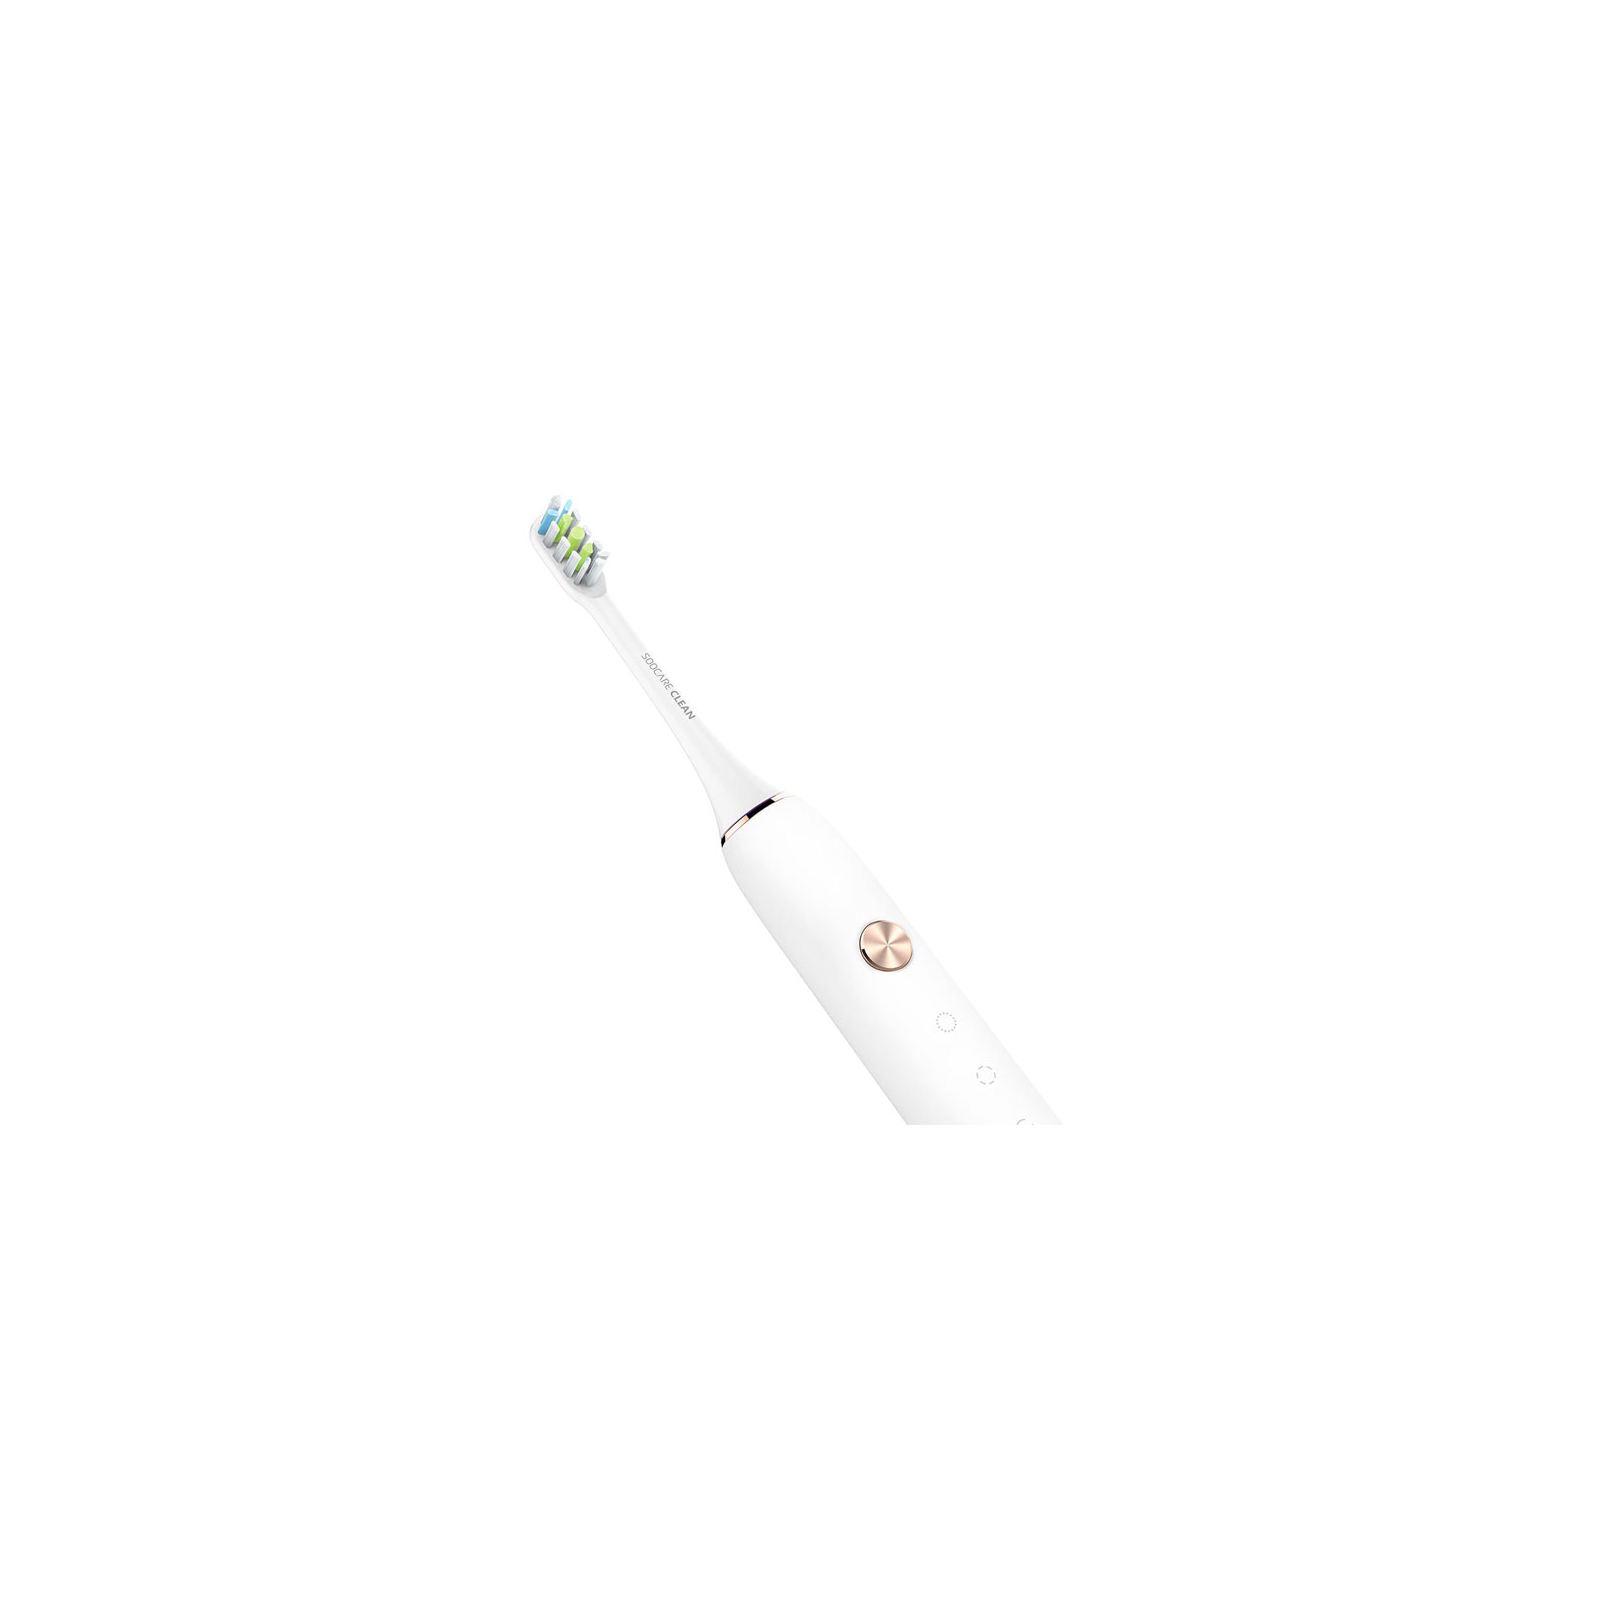 Электрическая зубная щетка Xiaomi Soocas X3 pink изображение 3